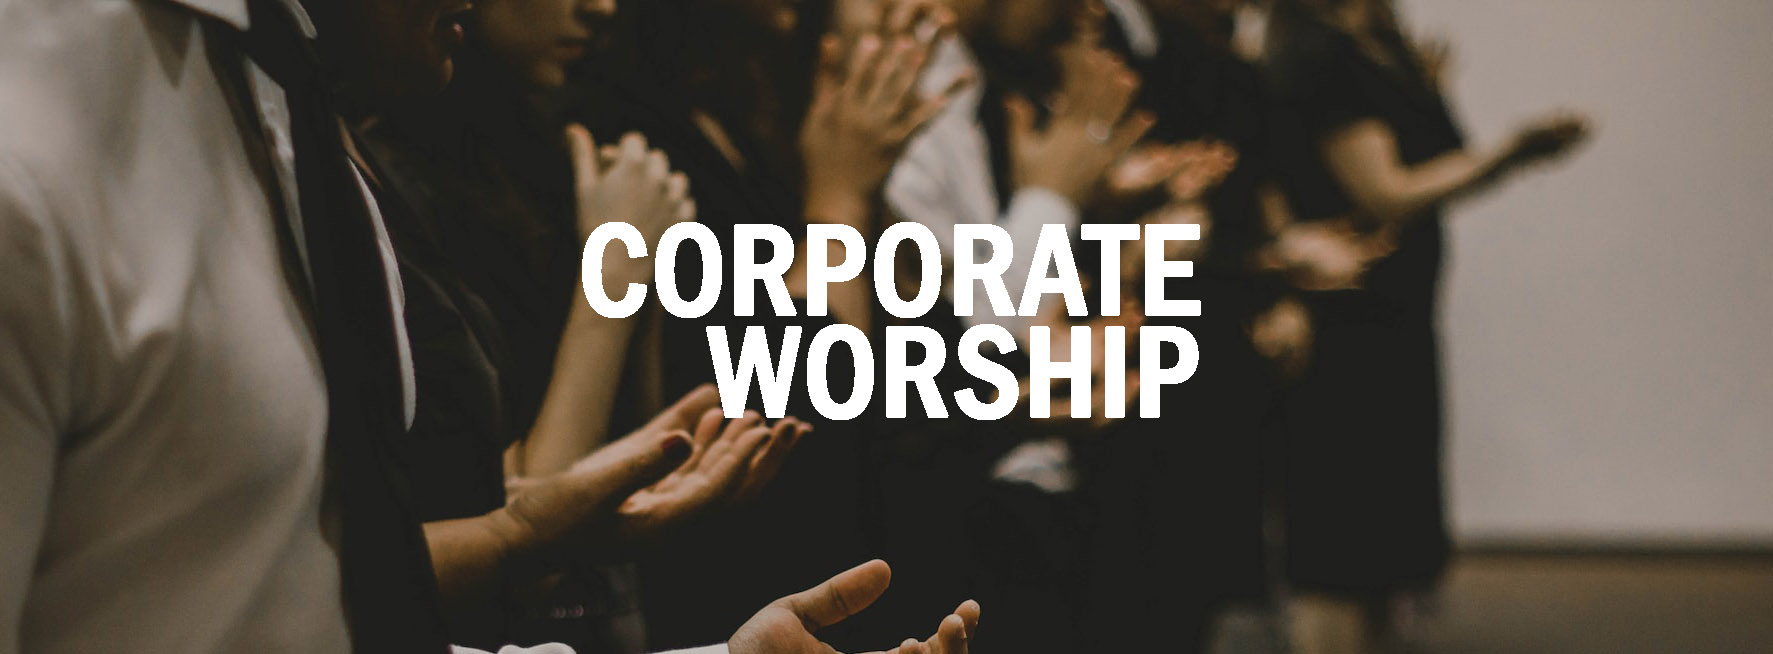 Corporate Worship - 2